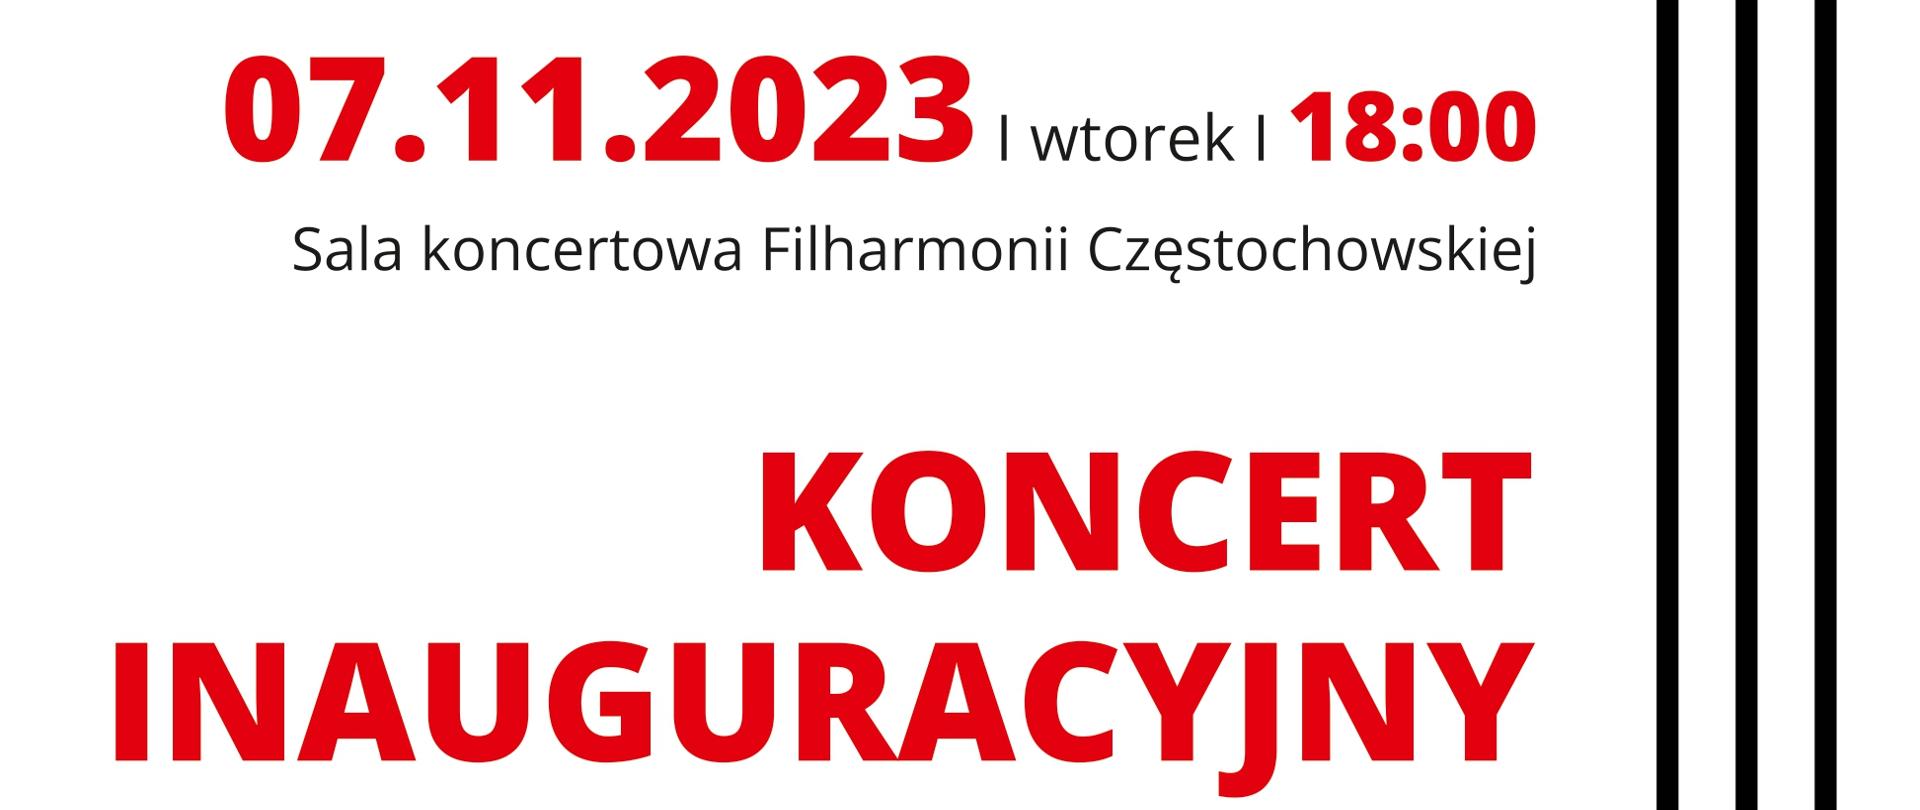 Na białym tle informacje dotyczące koncertu inaugurującego V Międzynarodowy Konkurs Skrzypcowy Muzyki Polskiej w Częstochowie